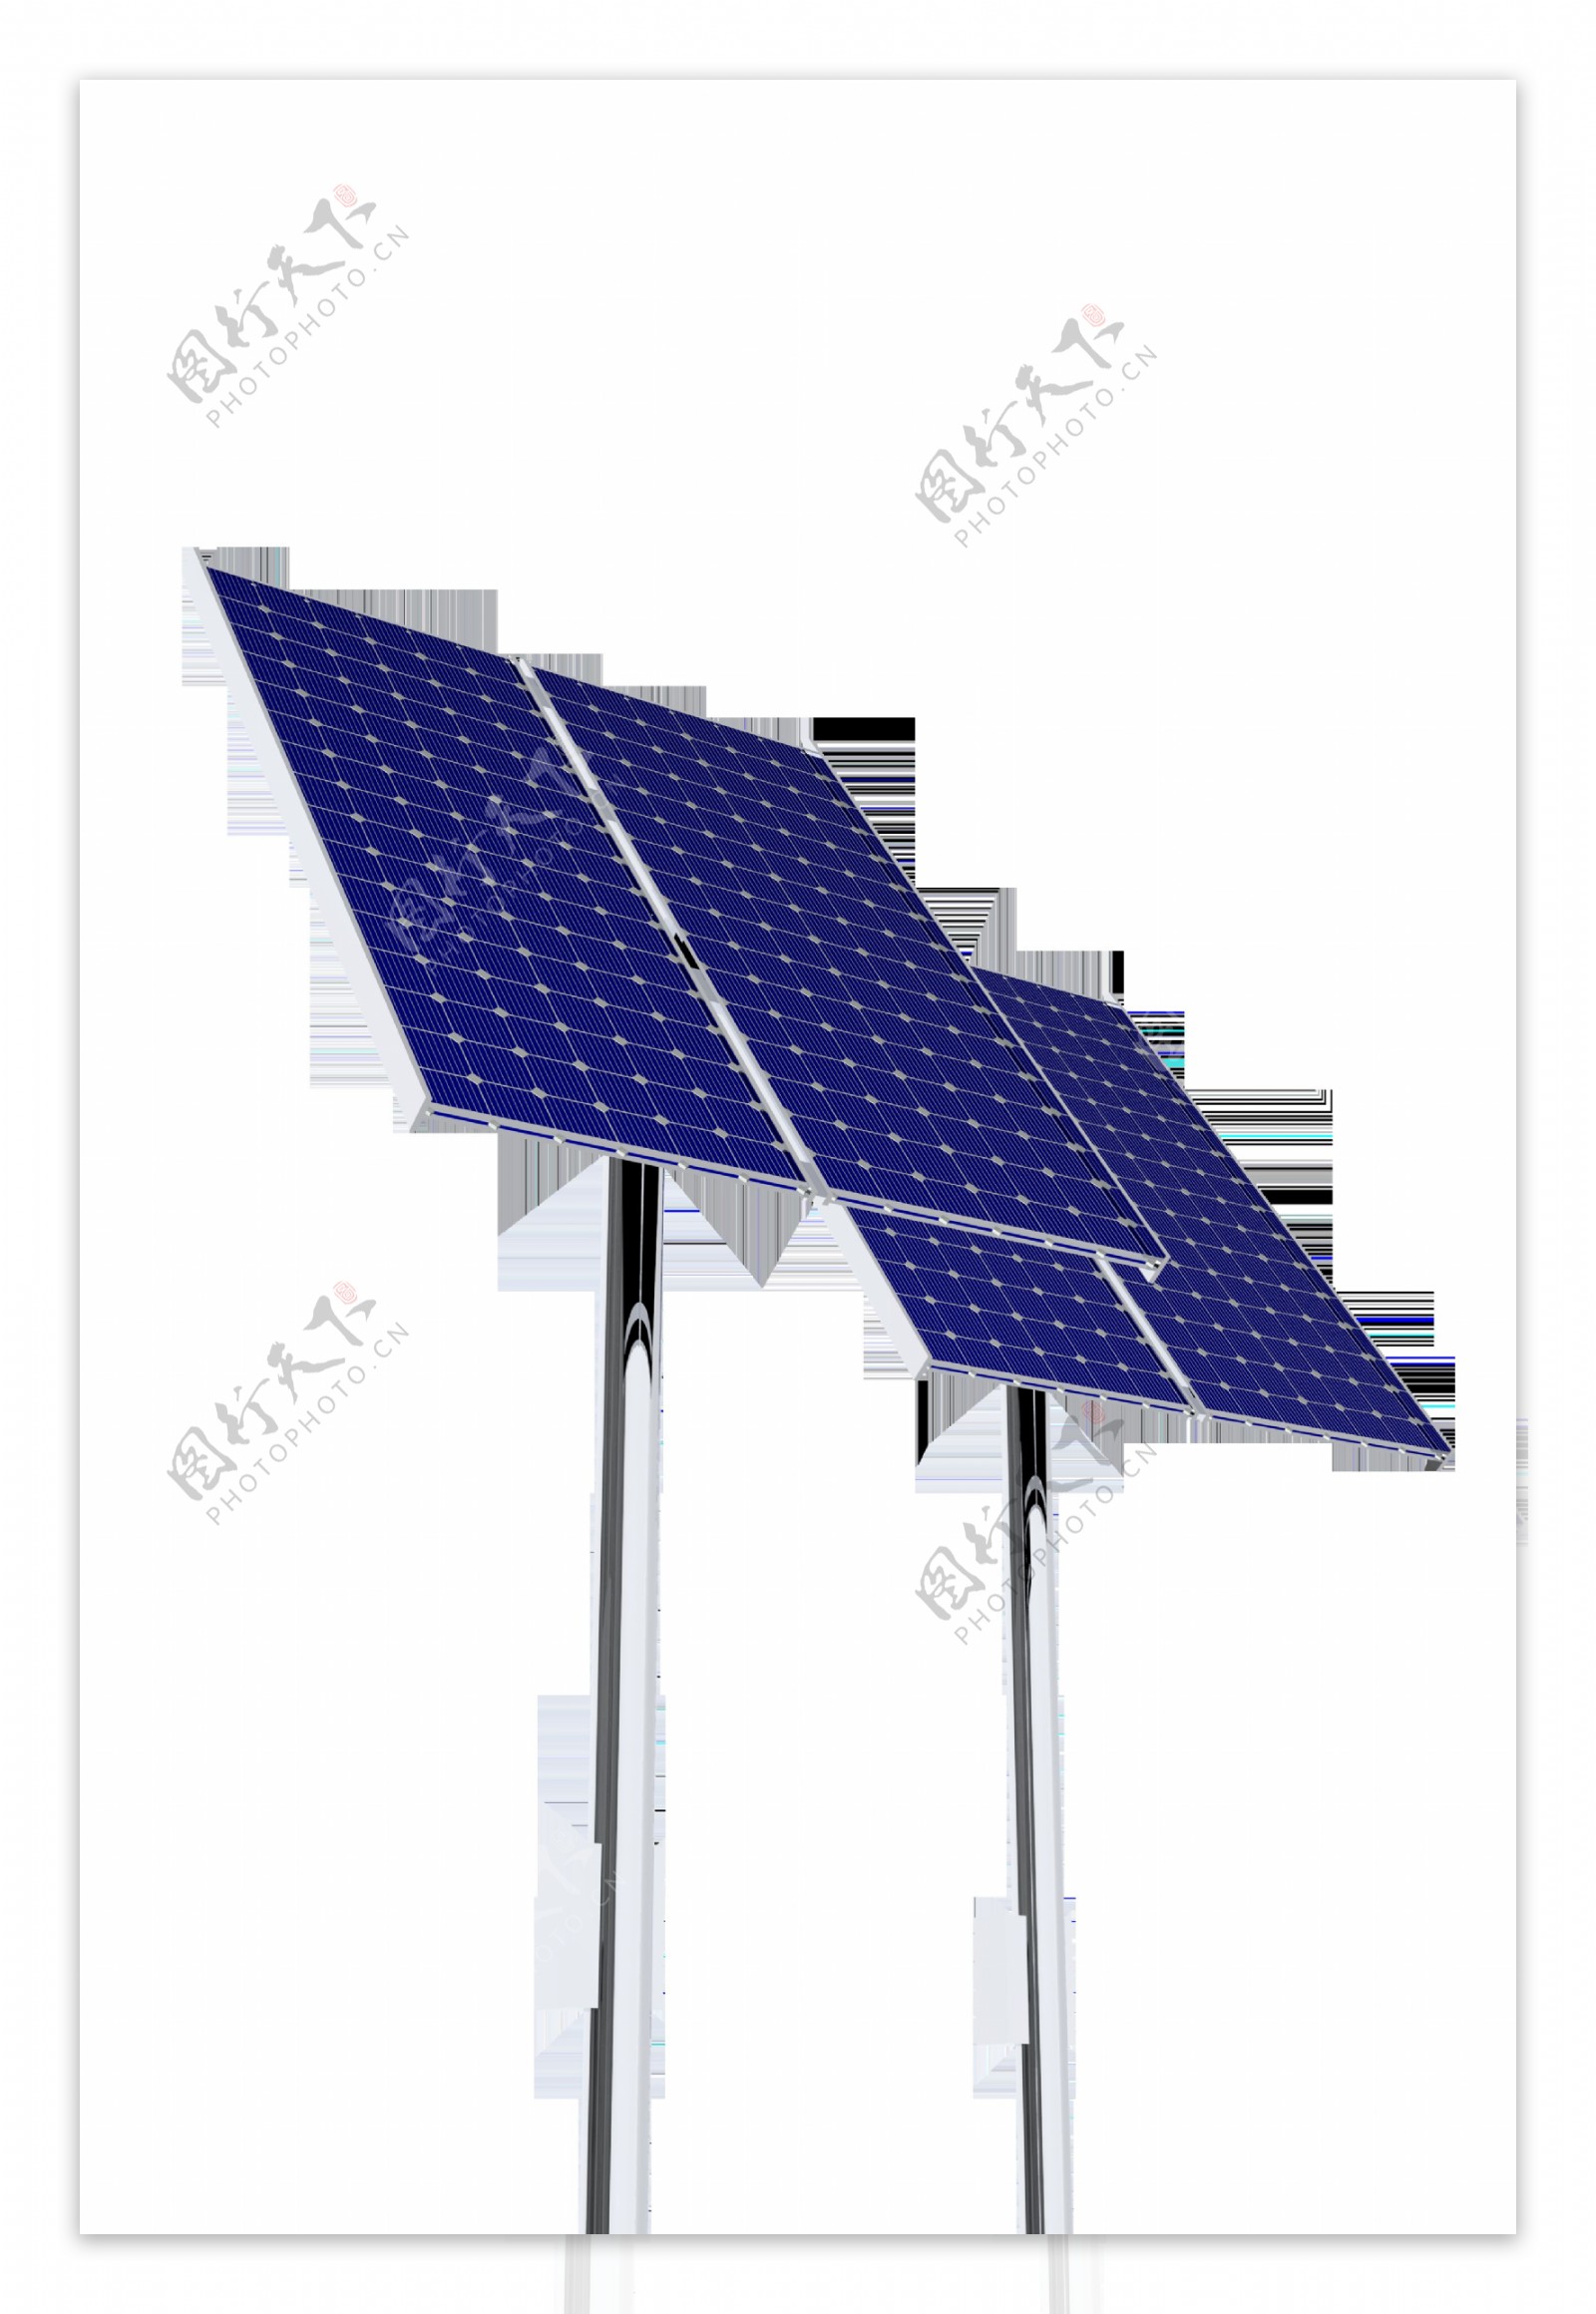 太阳能电池板架